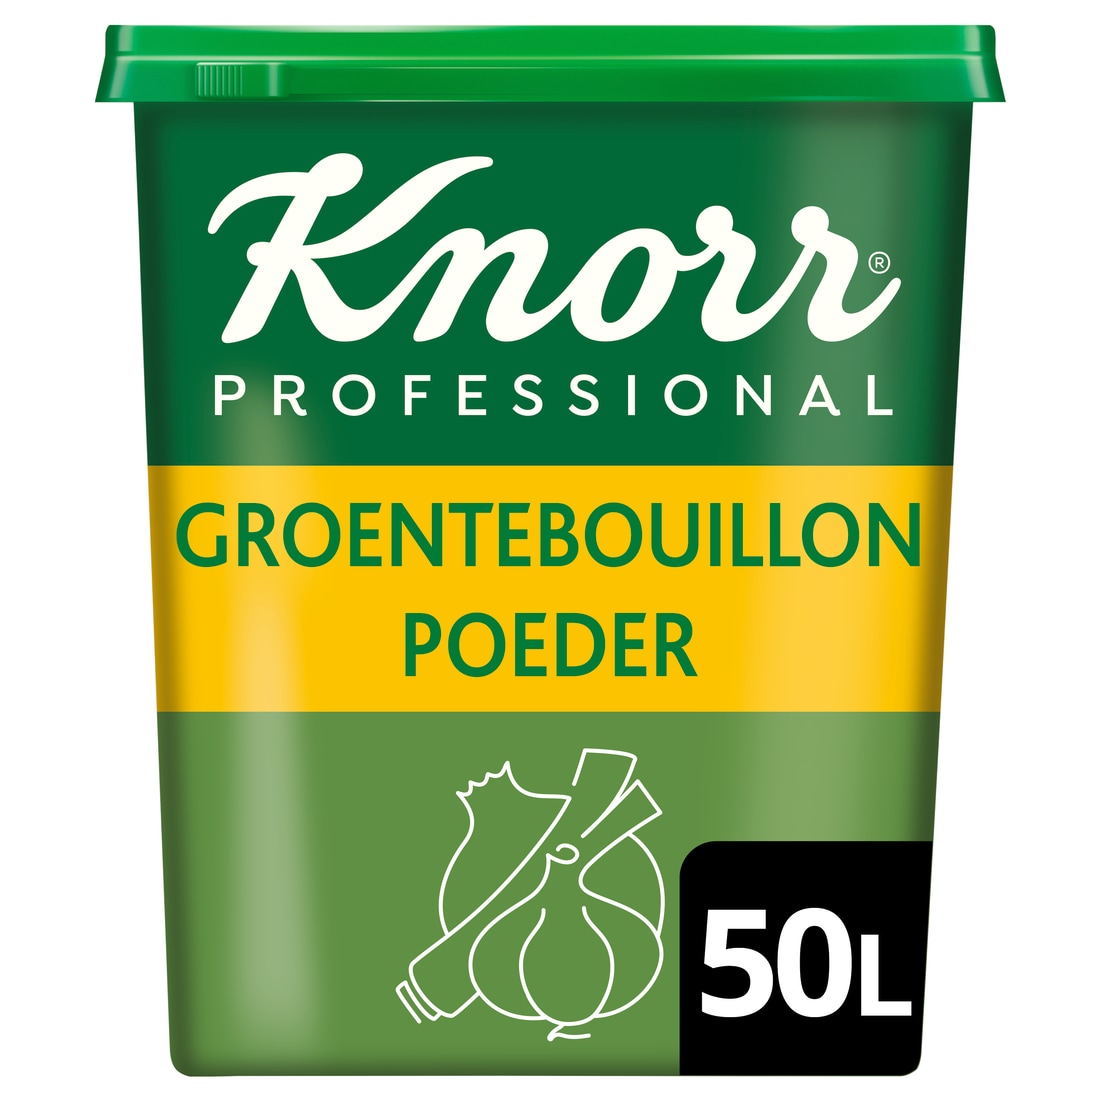 Knorr Professional Groentebouillon poeder krachtig  50L - Knorr 1-2-3 Groentebouillon geeft gerechten een krachtige smaak en is glutenvrij."